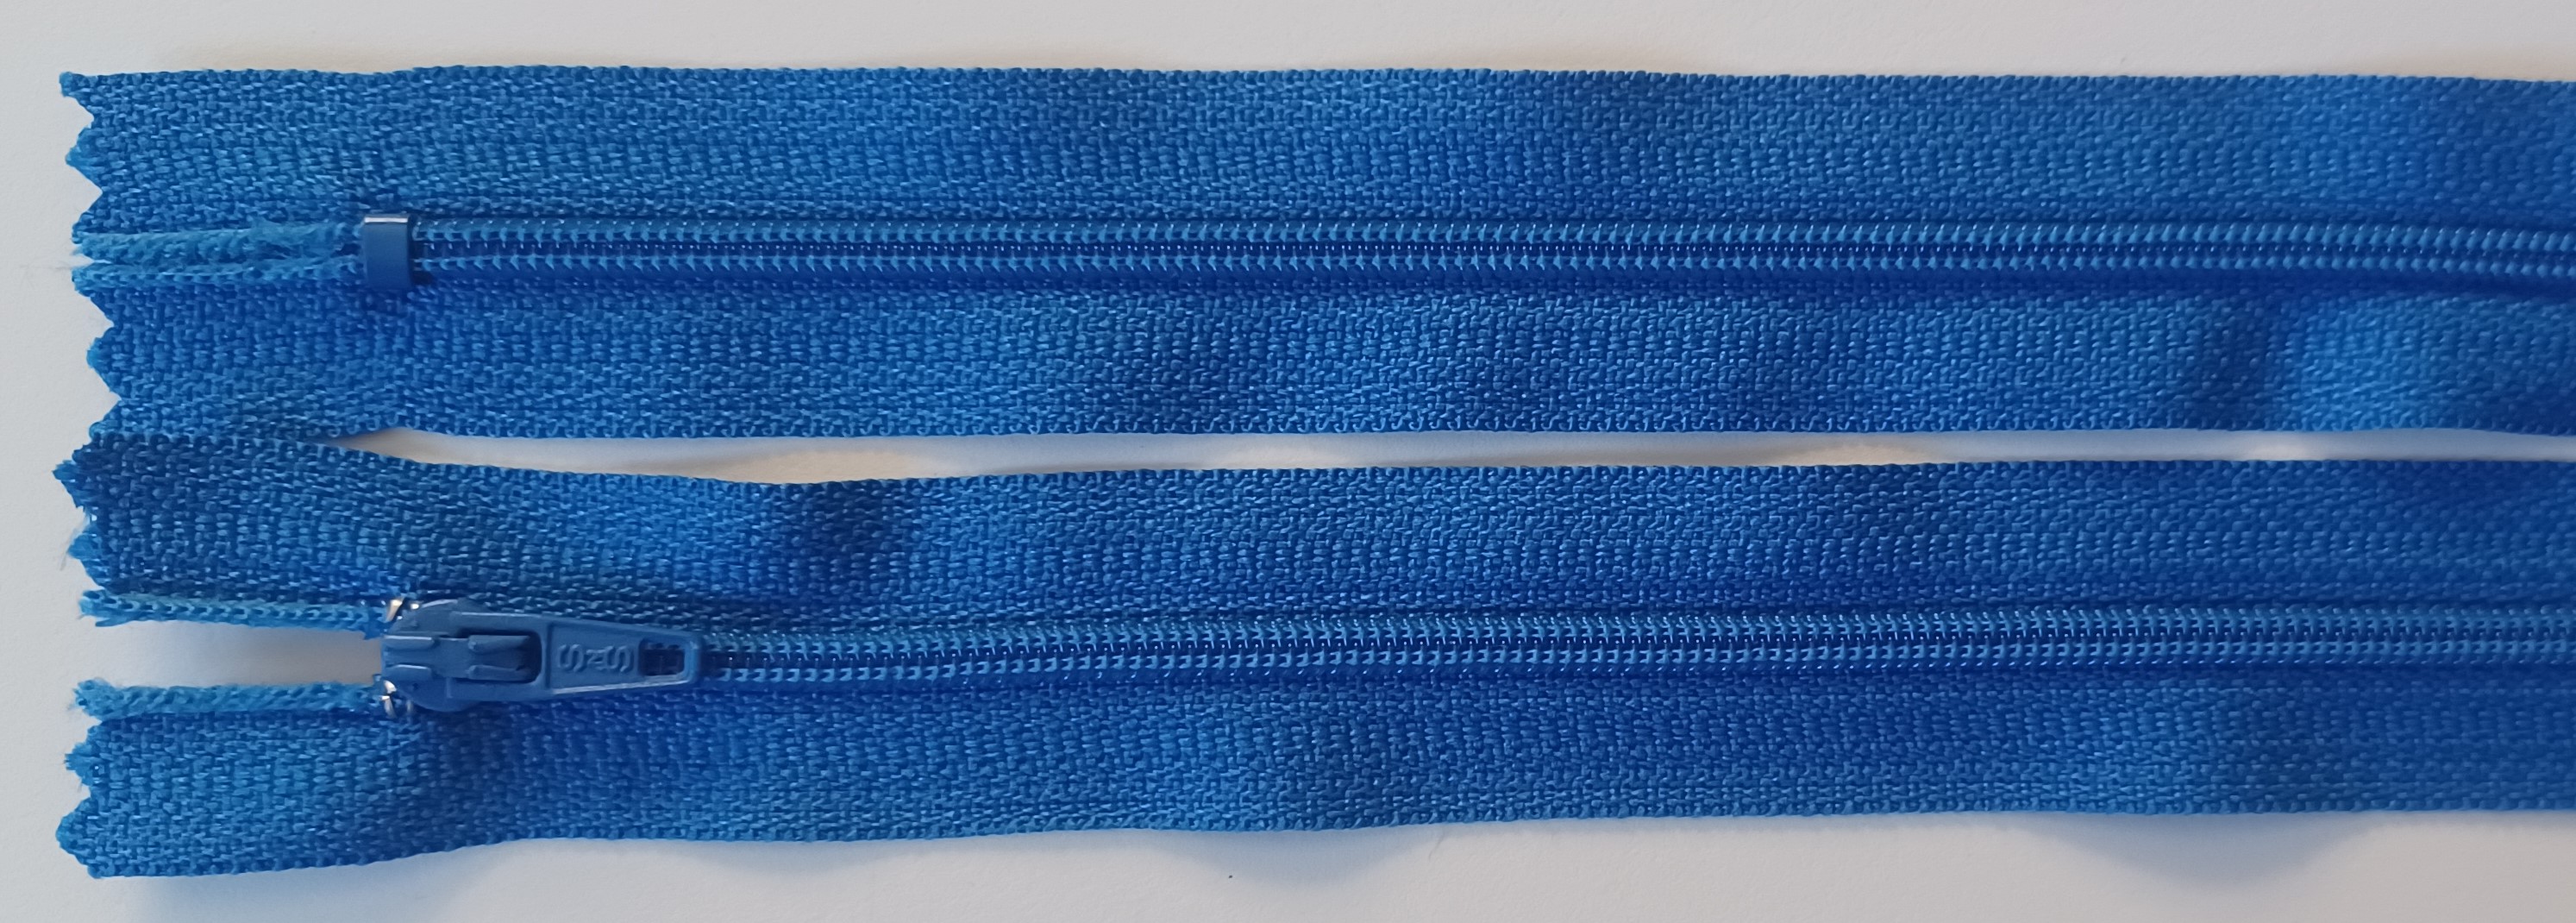 SNS 7" Bright Blue Nylon Coil Zipper